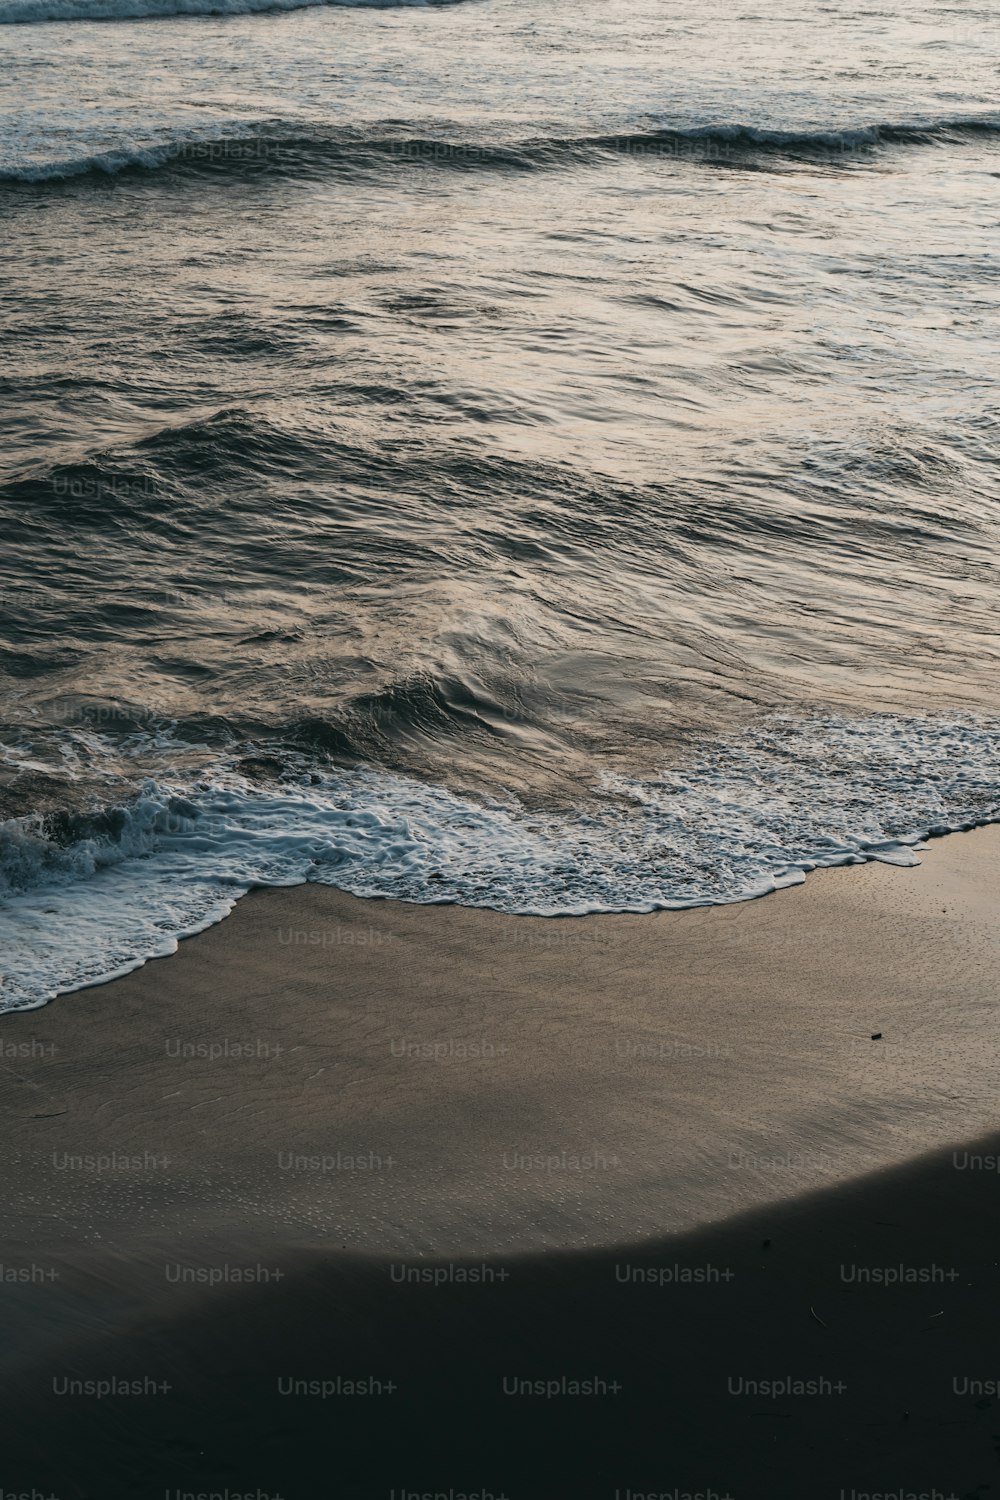 une personne debout sur une plage au bord de l’océan